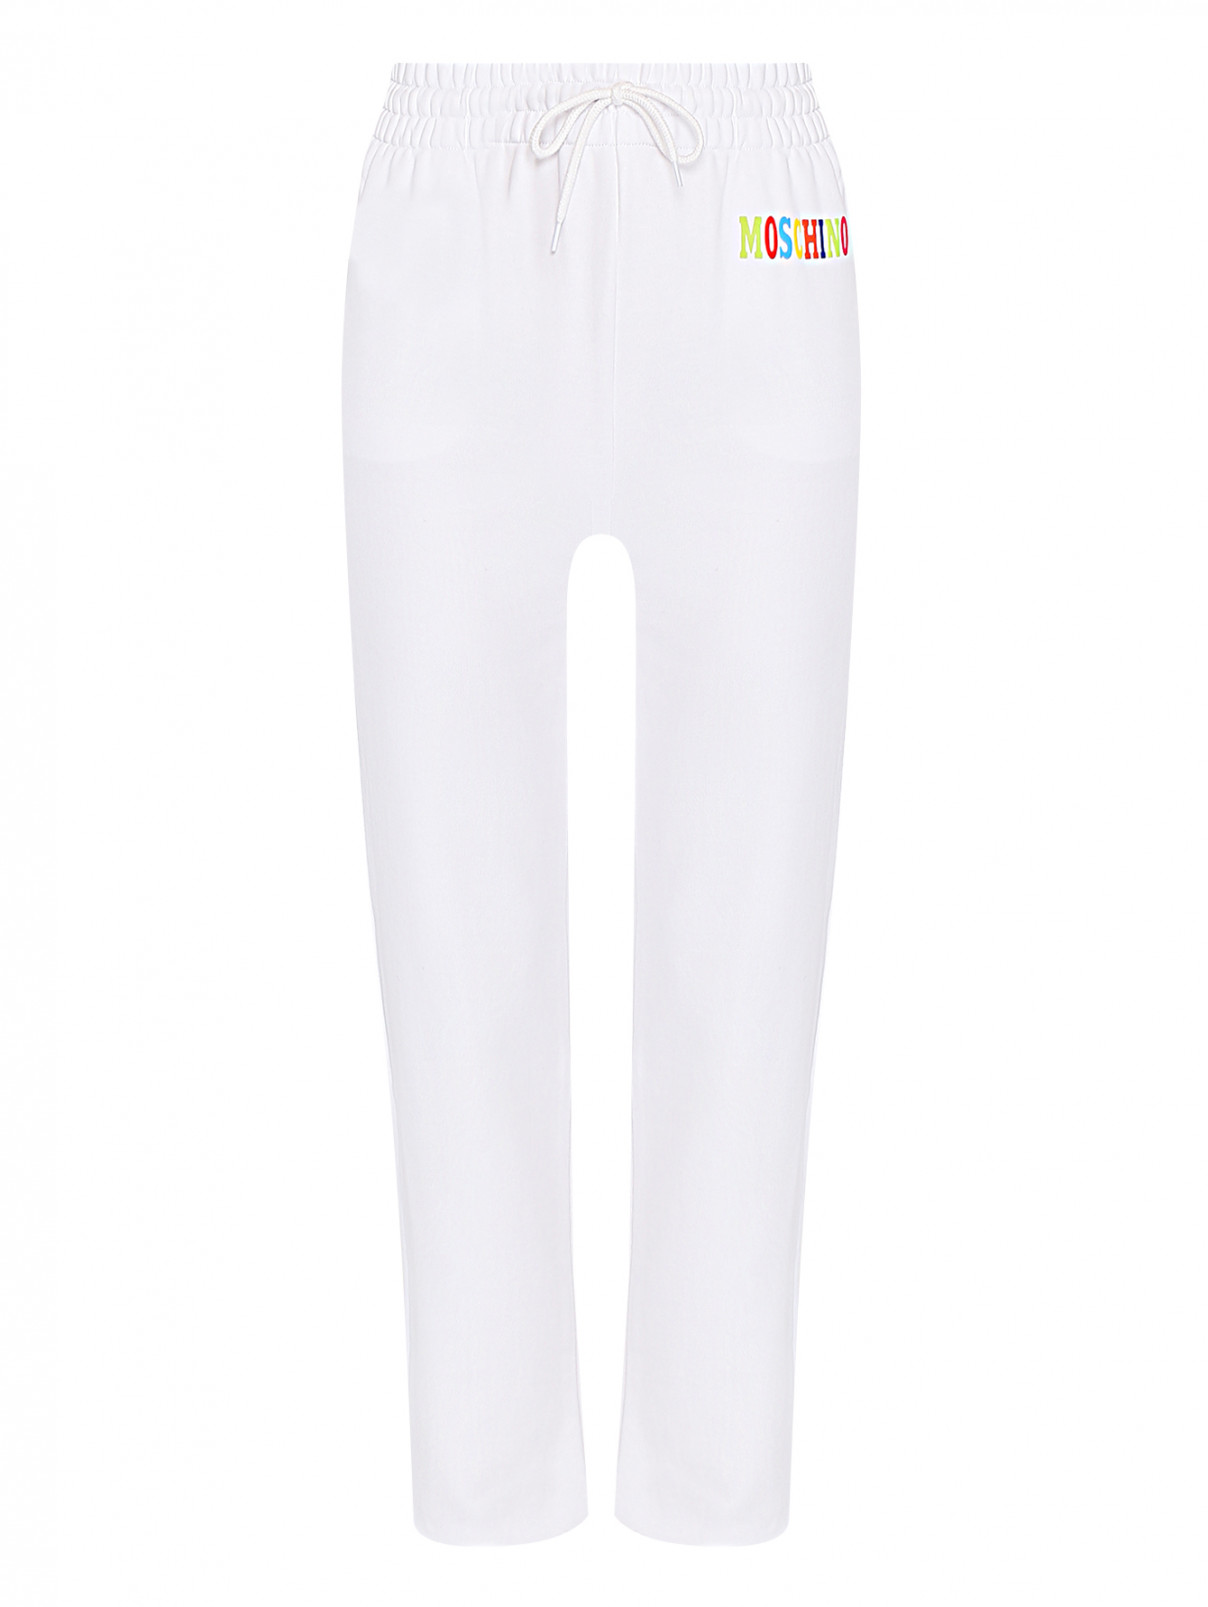 Трикотажные брюки с принтом Moschino  –  Общий вид  – Цвет:  Белый